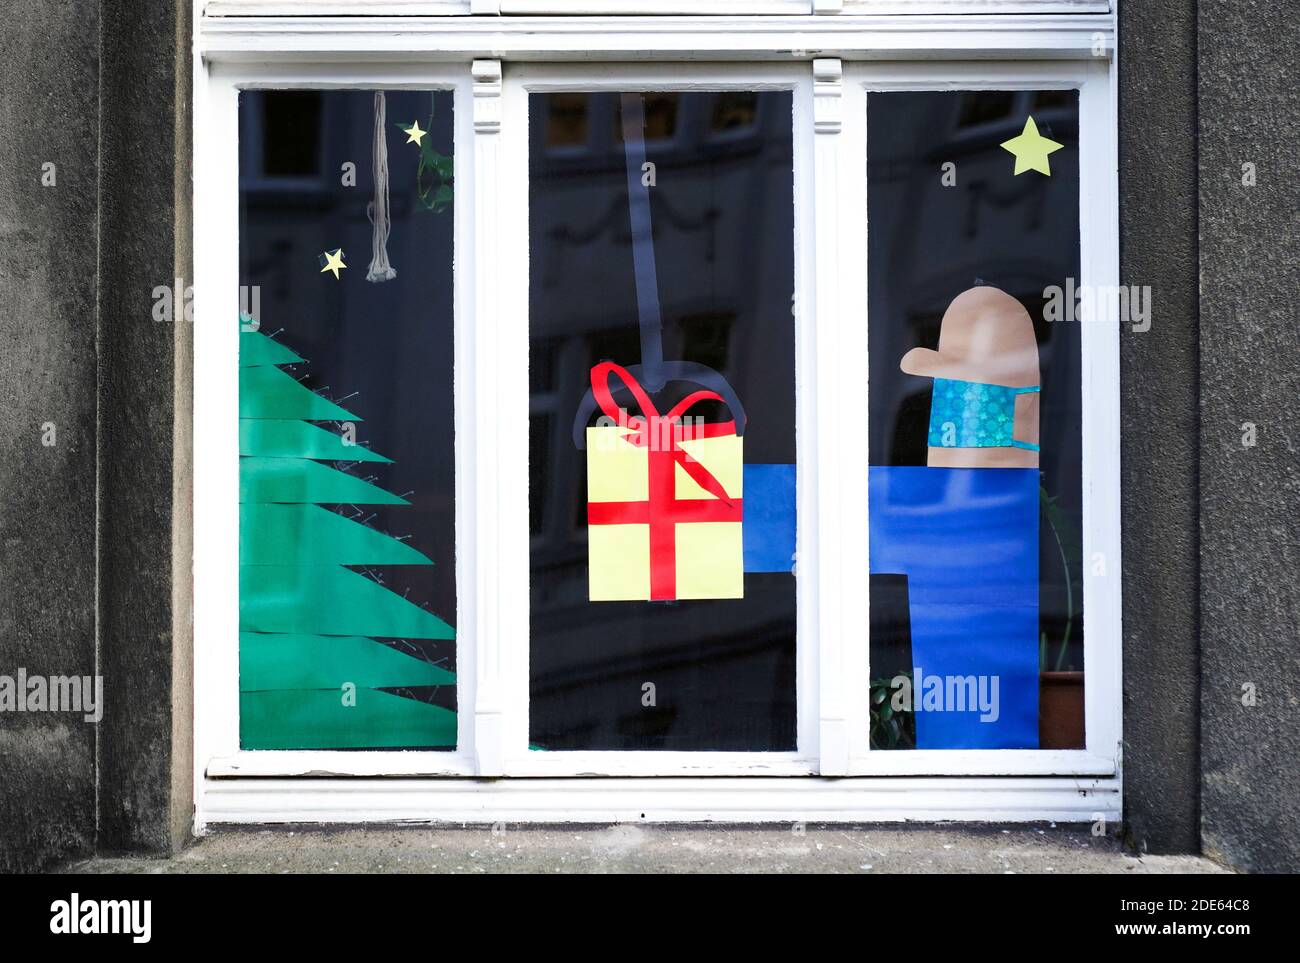 Dortmund, Alemania, 29 de noviembre de 2020: La ventana del apartamento decorada para Navidad se refiere a la víspera de Navidad en Corona Times. El hombre que da el regalo lleva la protección de la boca y la nariz contra el virus. Foto de stock